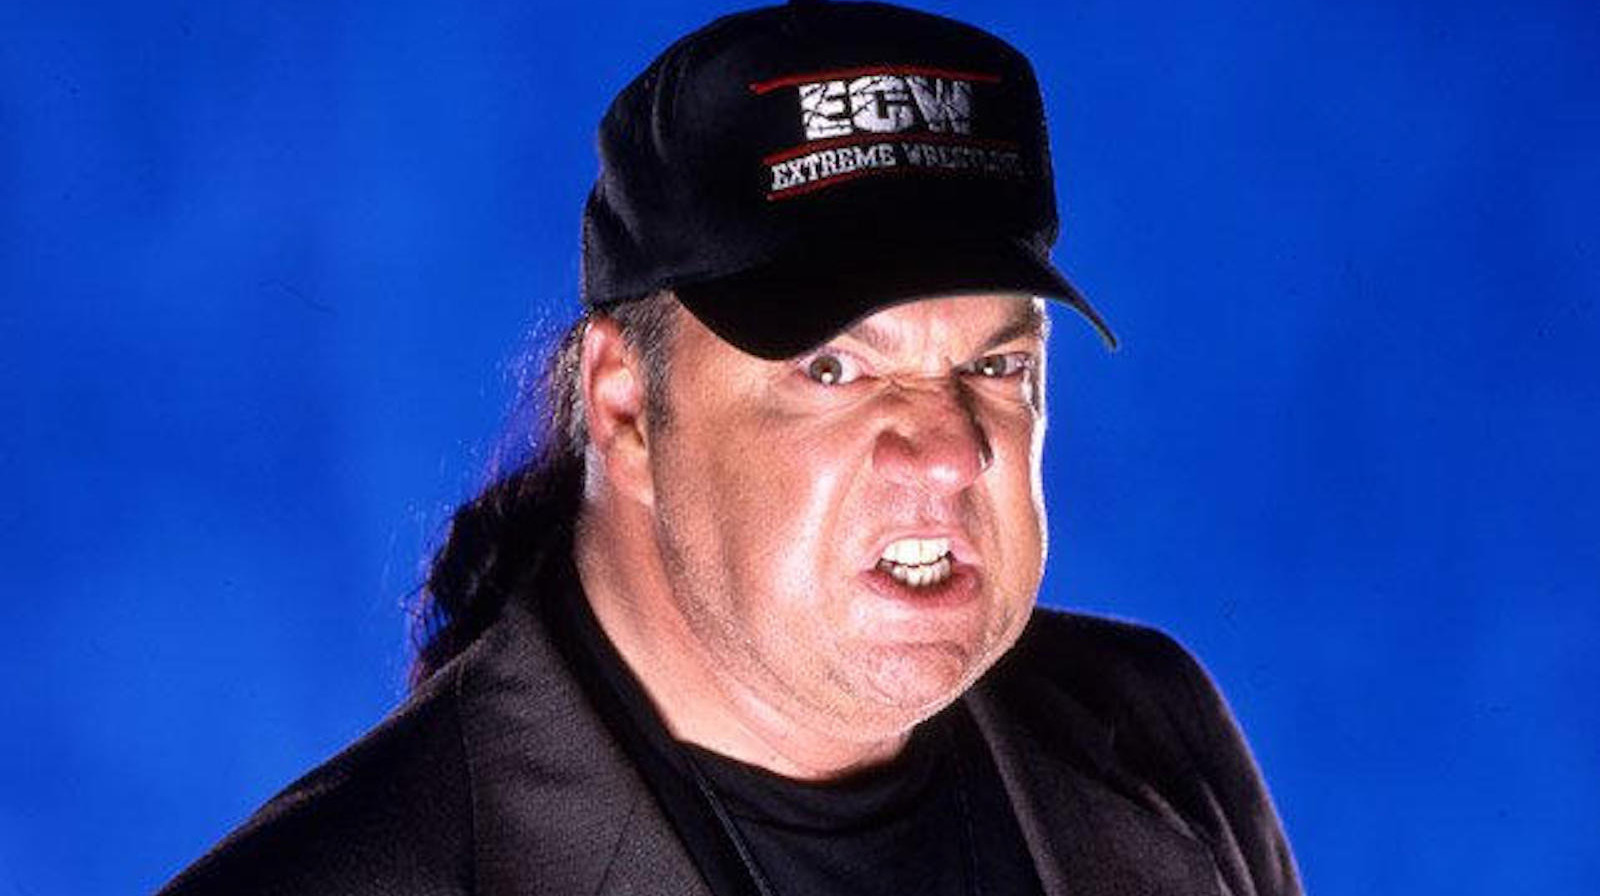 Shane Douglas llama a Paul Heyman 'un booker demasiado relajado' en los días de ECW